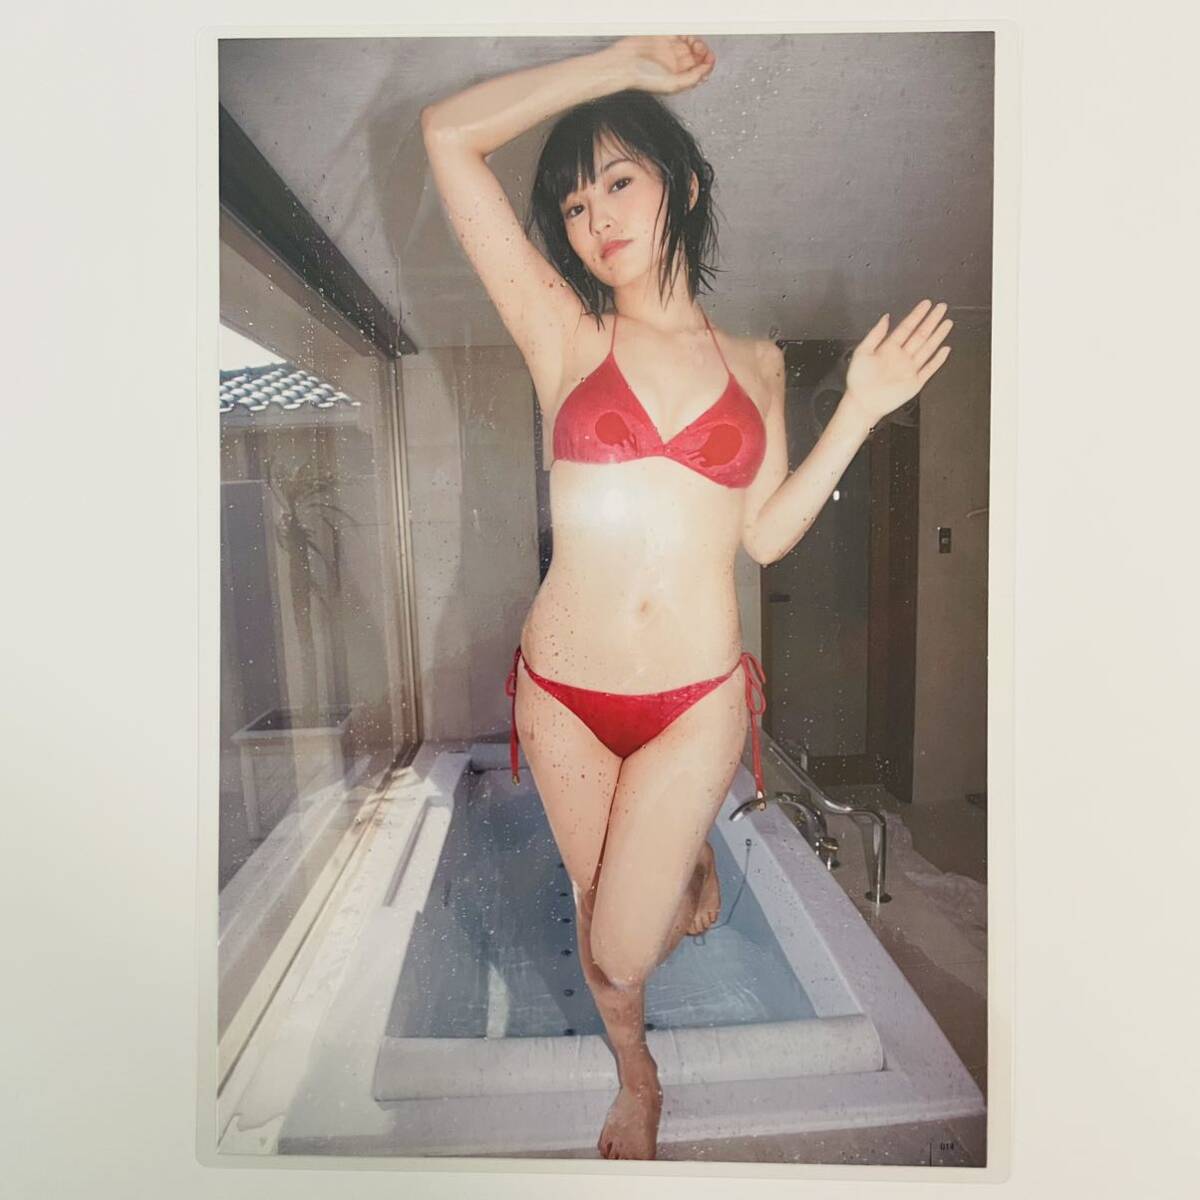 [ Yamamoto Sayaka ][ высокое качество ламинирование обработка ]100μ A4 размер размещение журнал неизвестен вырезки женщина super звезда gravure 